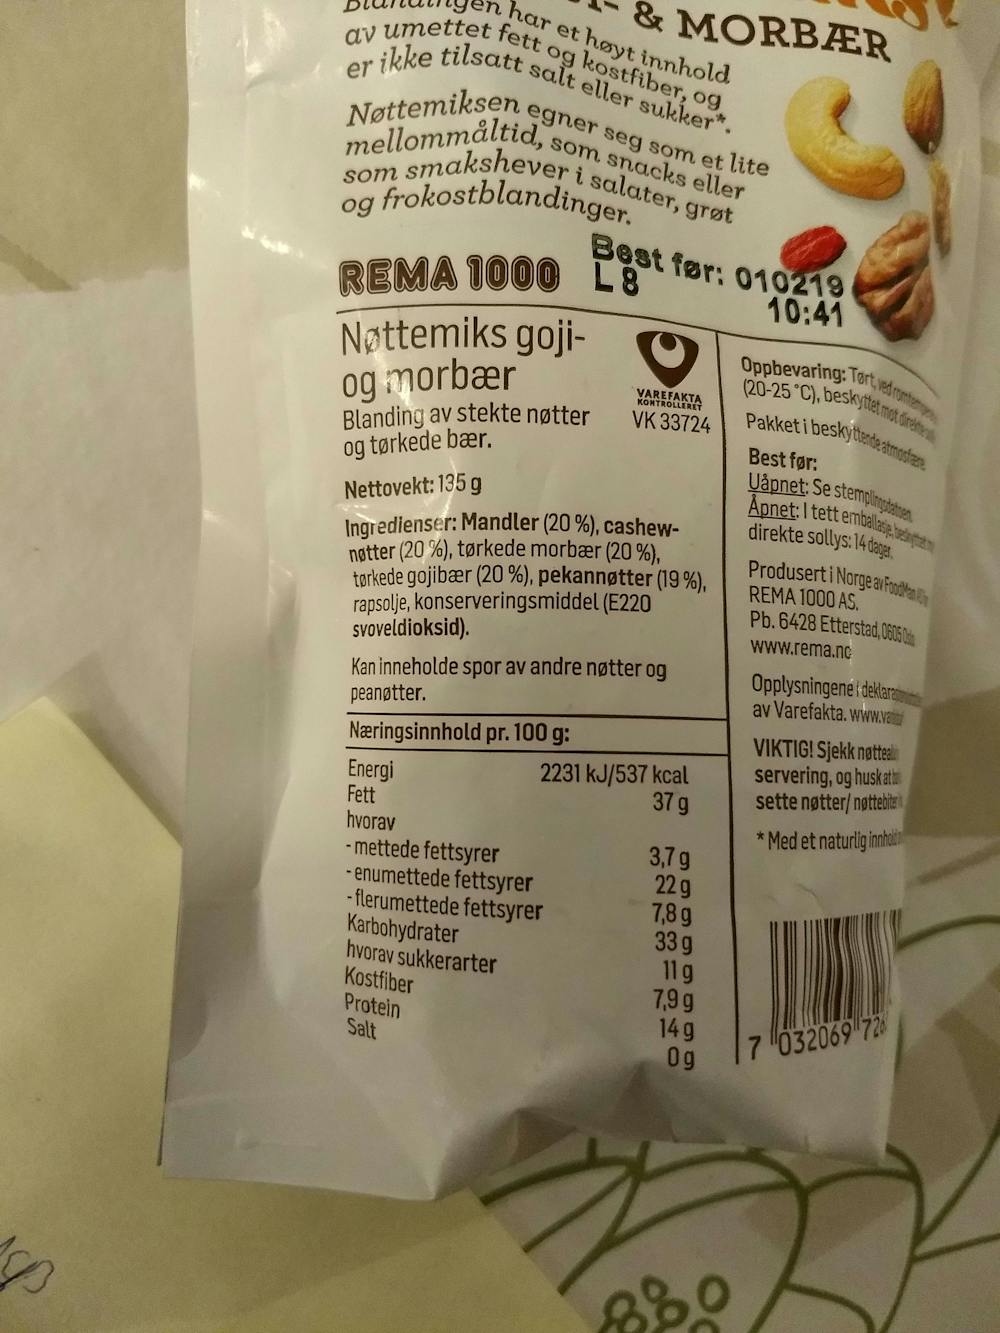 Ingredienslisten til Rema 1000 Nøttemiks goji- og morbær